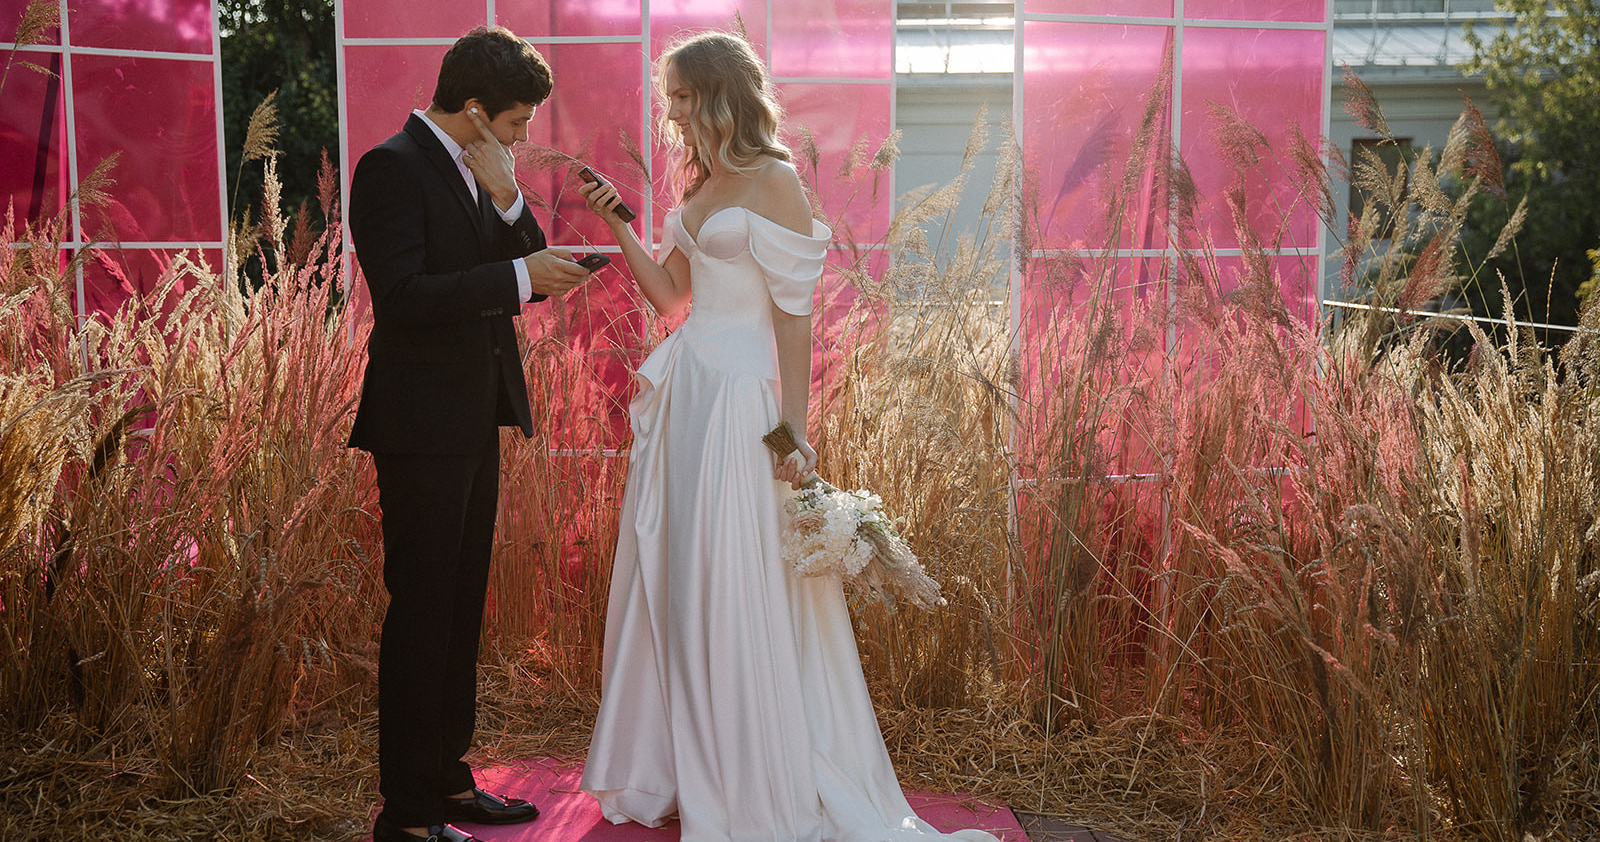 Минималистичная свадьба в ярко-розовом цвете